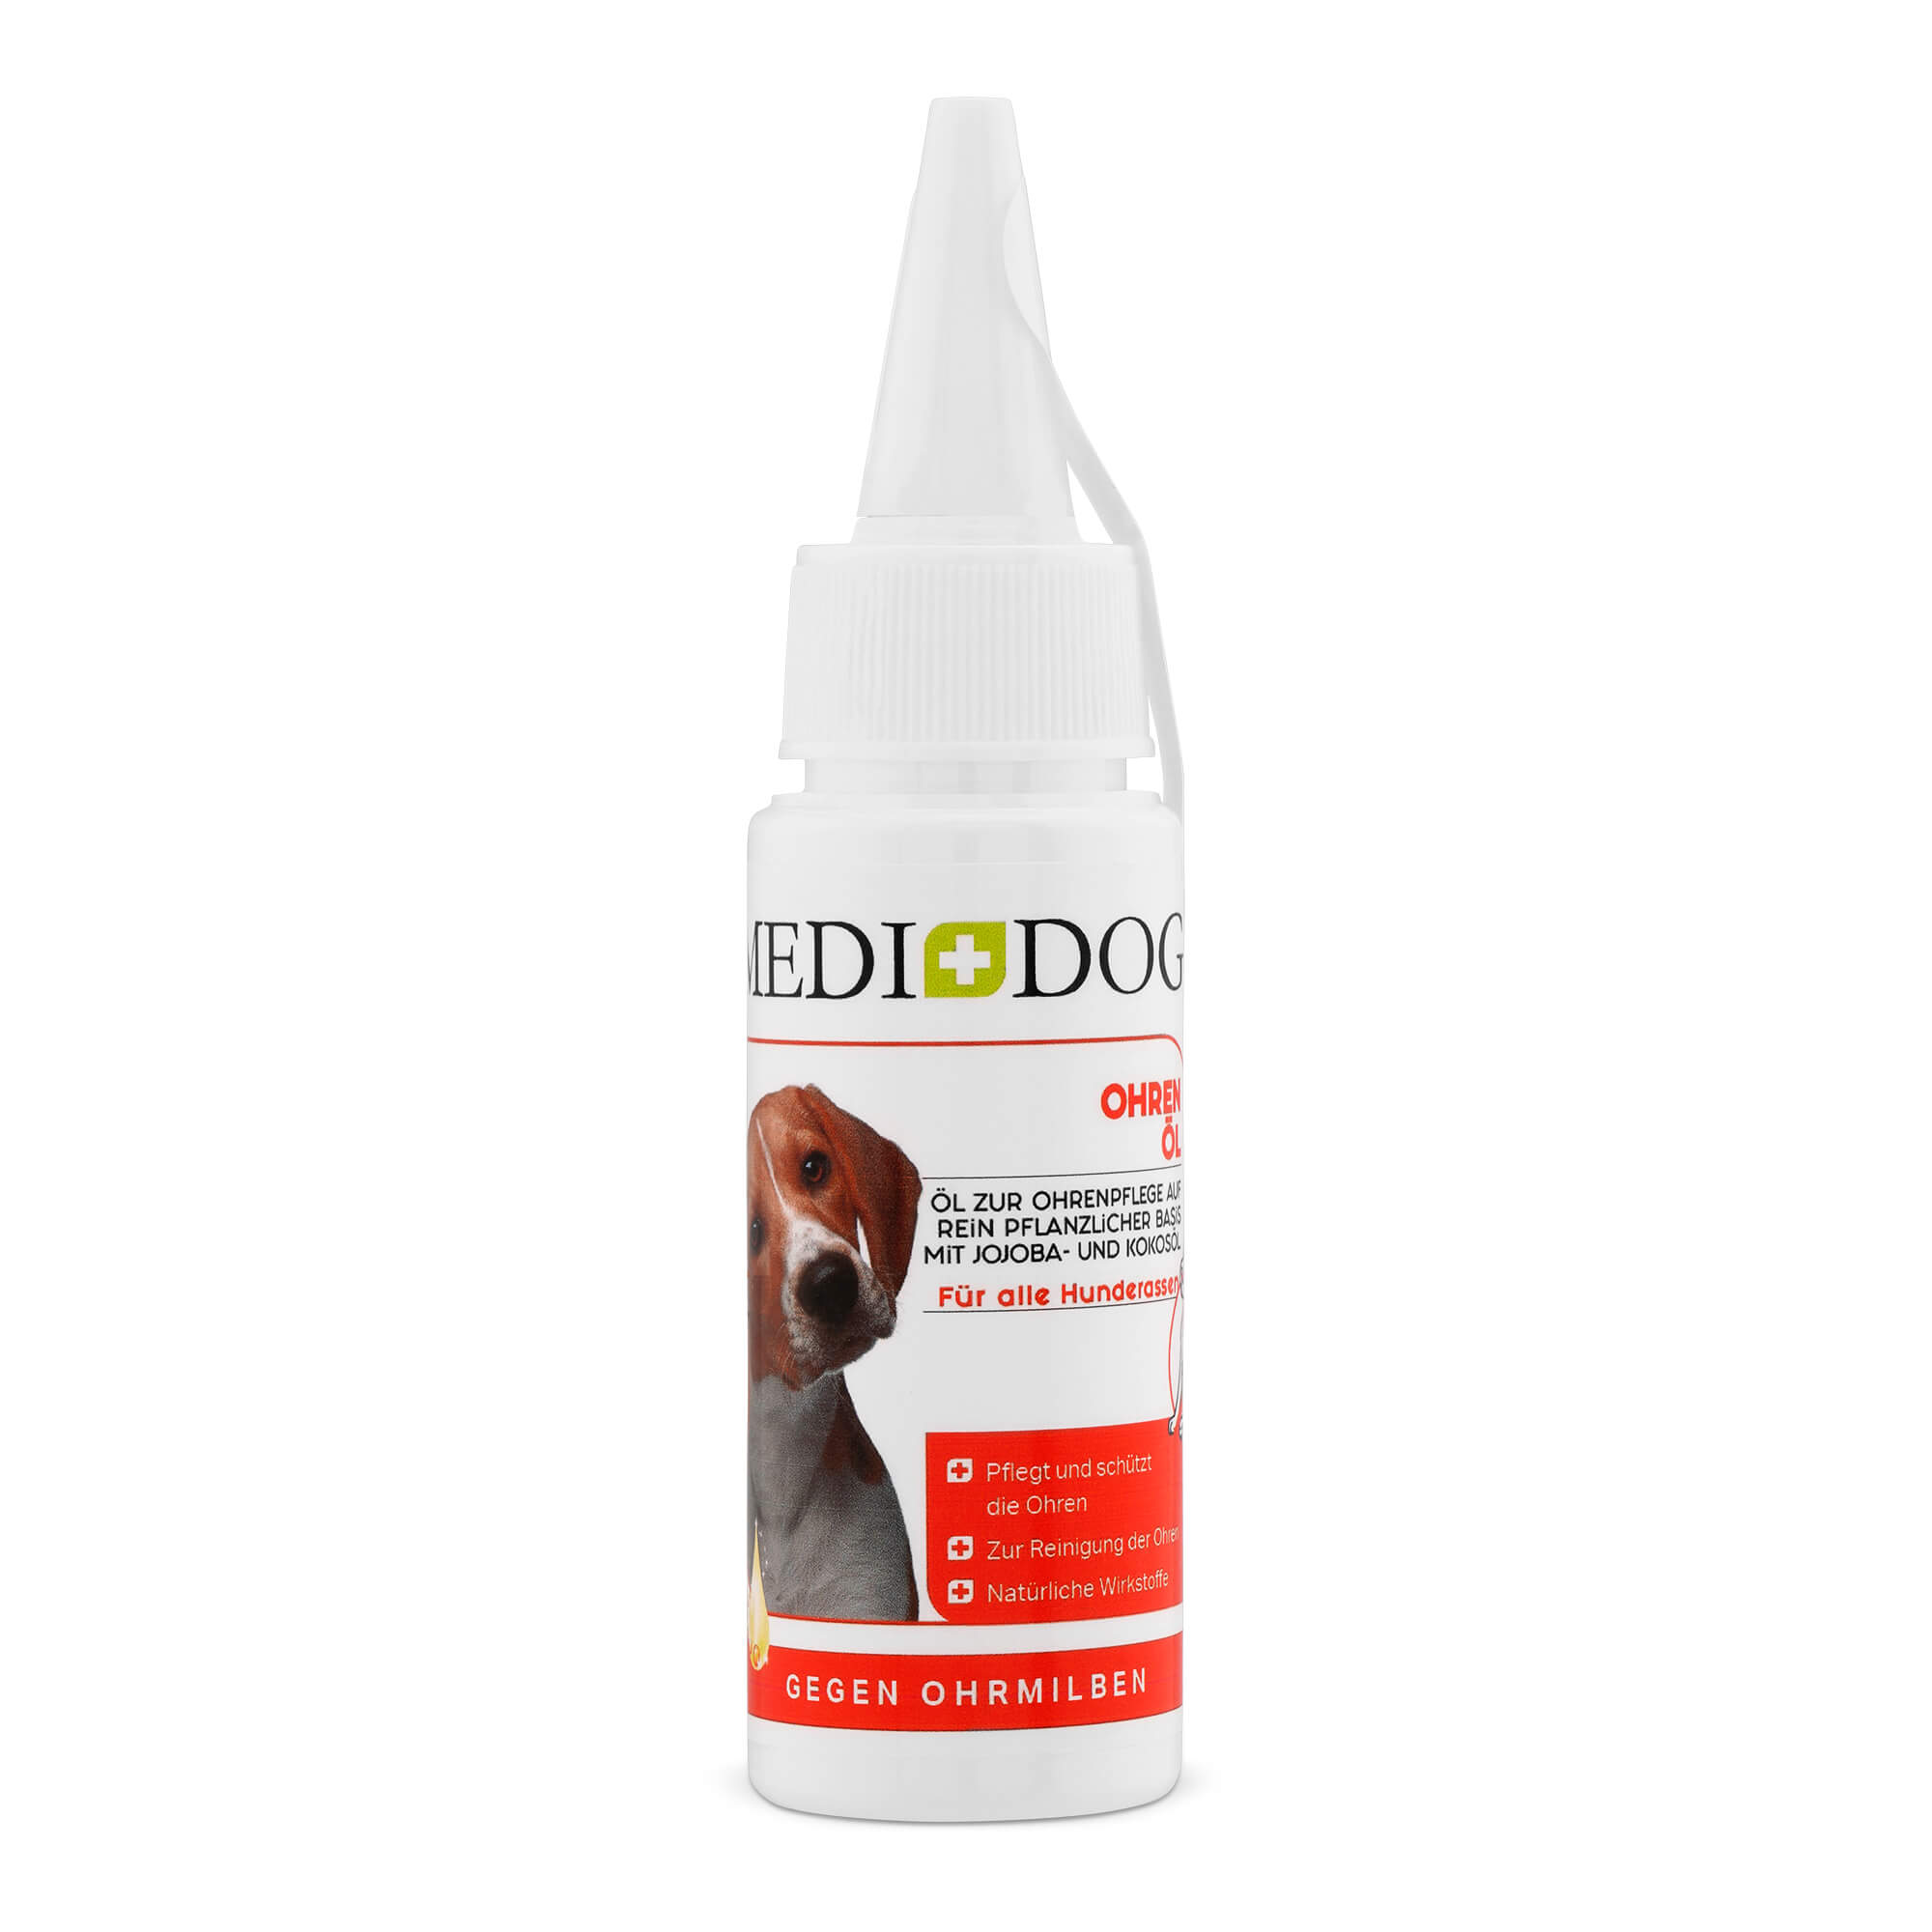 Medidog Ohren-Öl - schützt und pflegt empfindliche Hundeohren